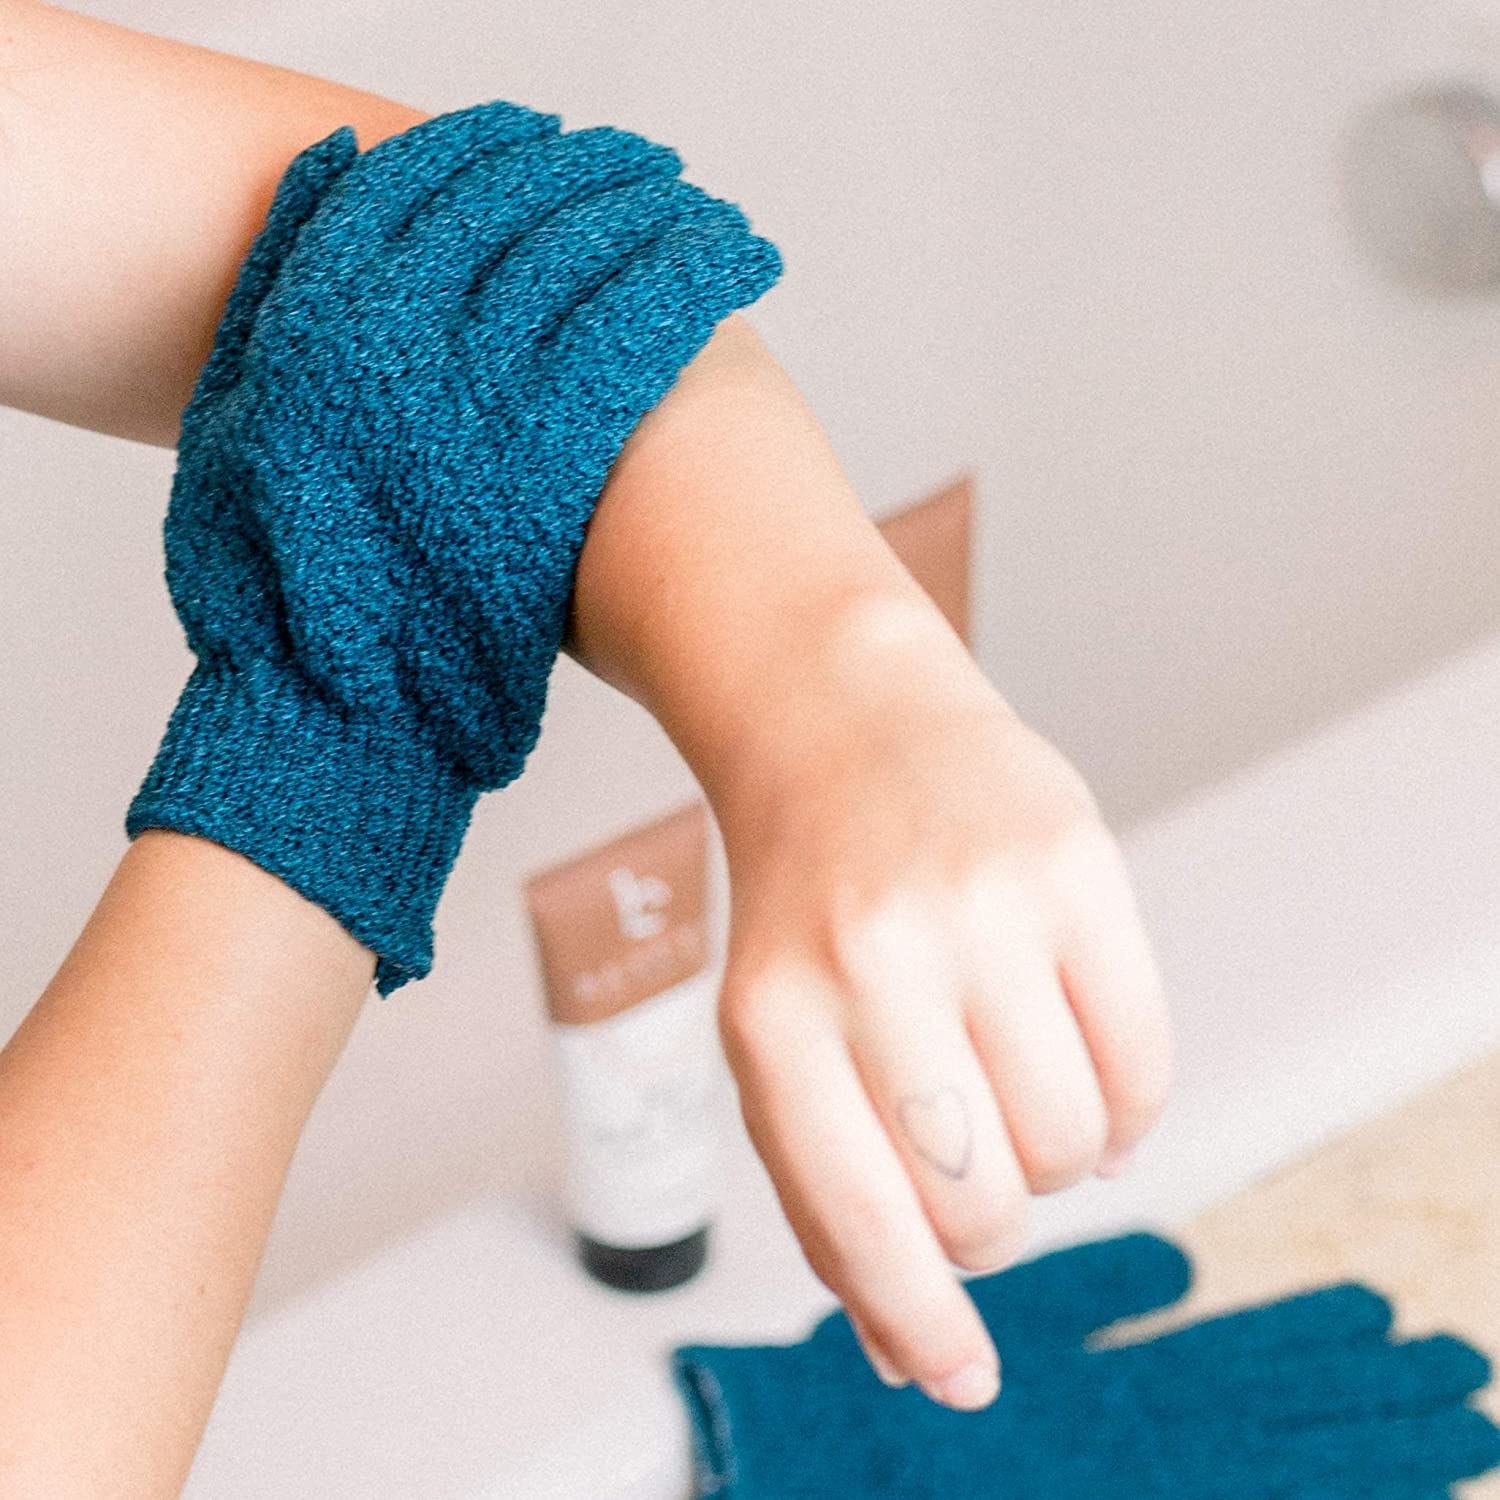 A person scrubbing their arm with a glove